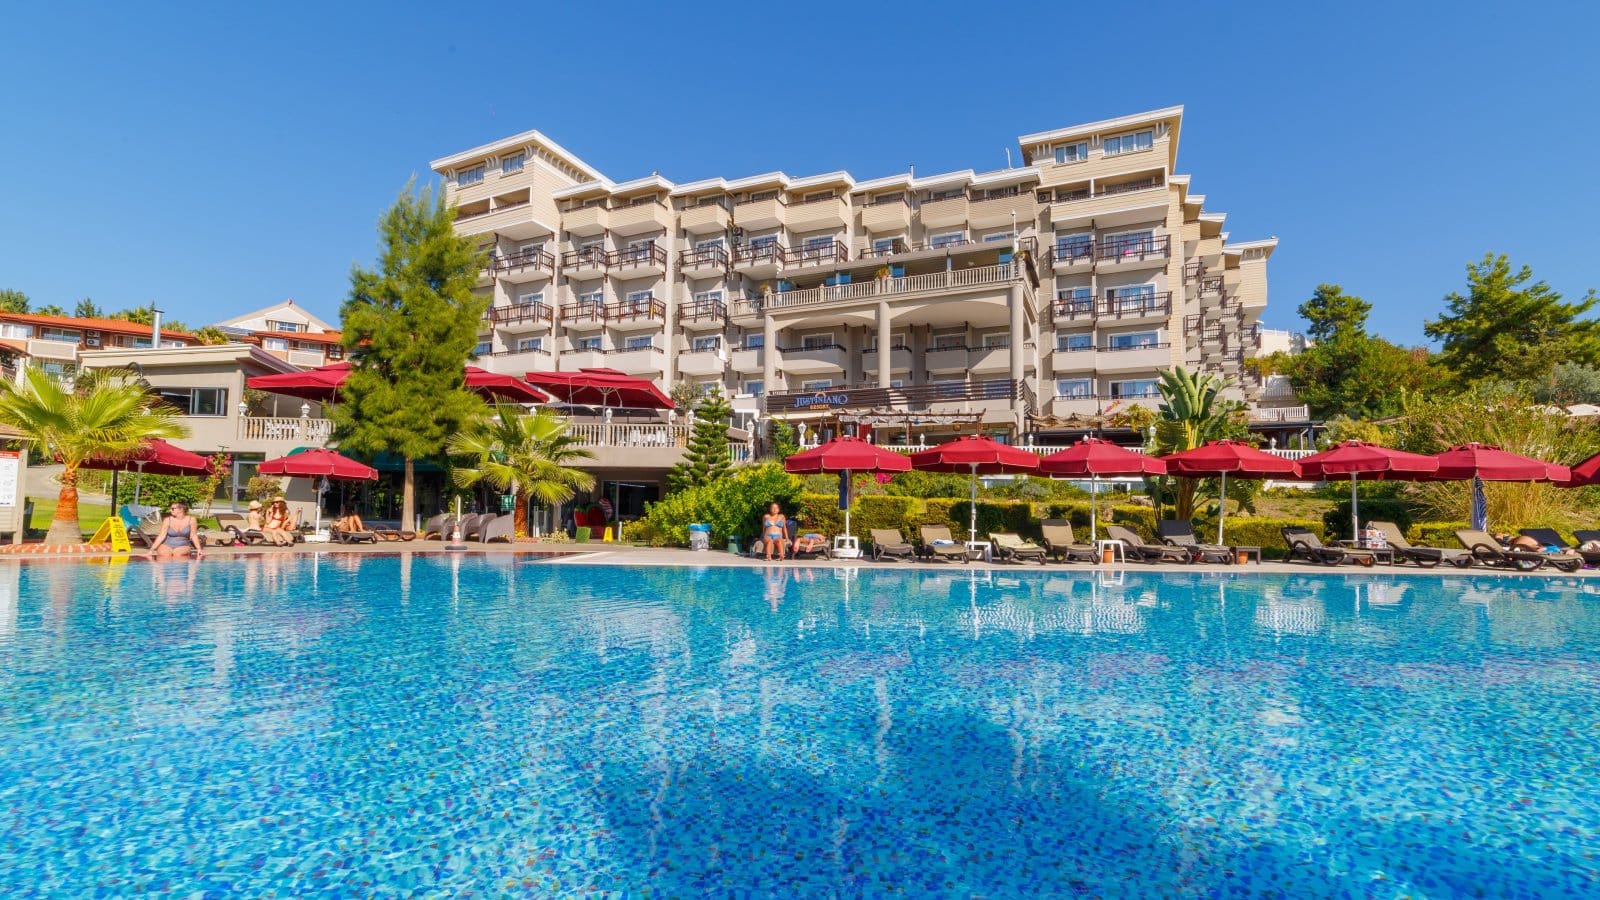 «Люди ездят сюда годами». Пятизвездочный отель в Турции притягивает туристов: что в нем особенного?